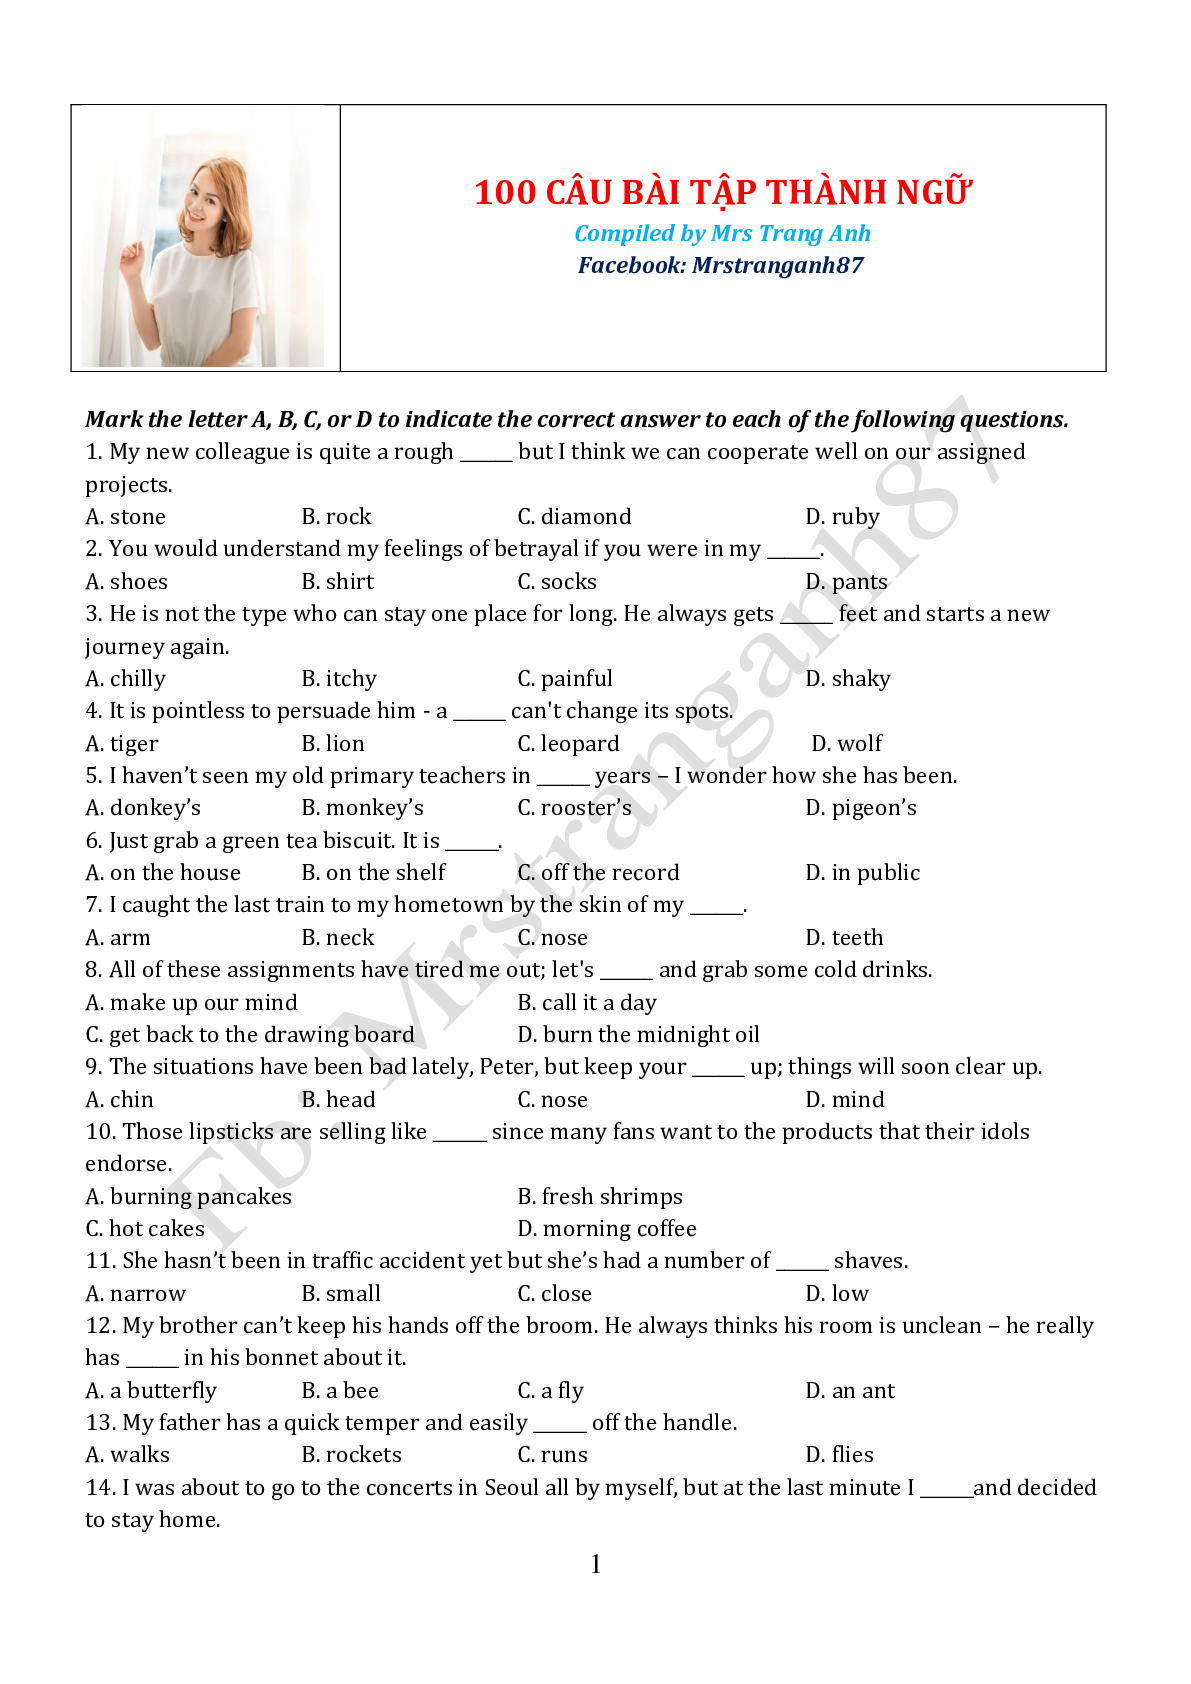 100 câu trắc nghiệm về thành ngữ môn Tiếng Anh (trang 1)